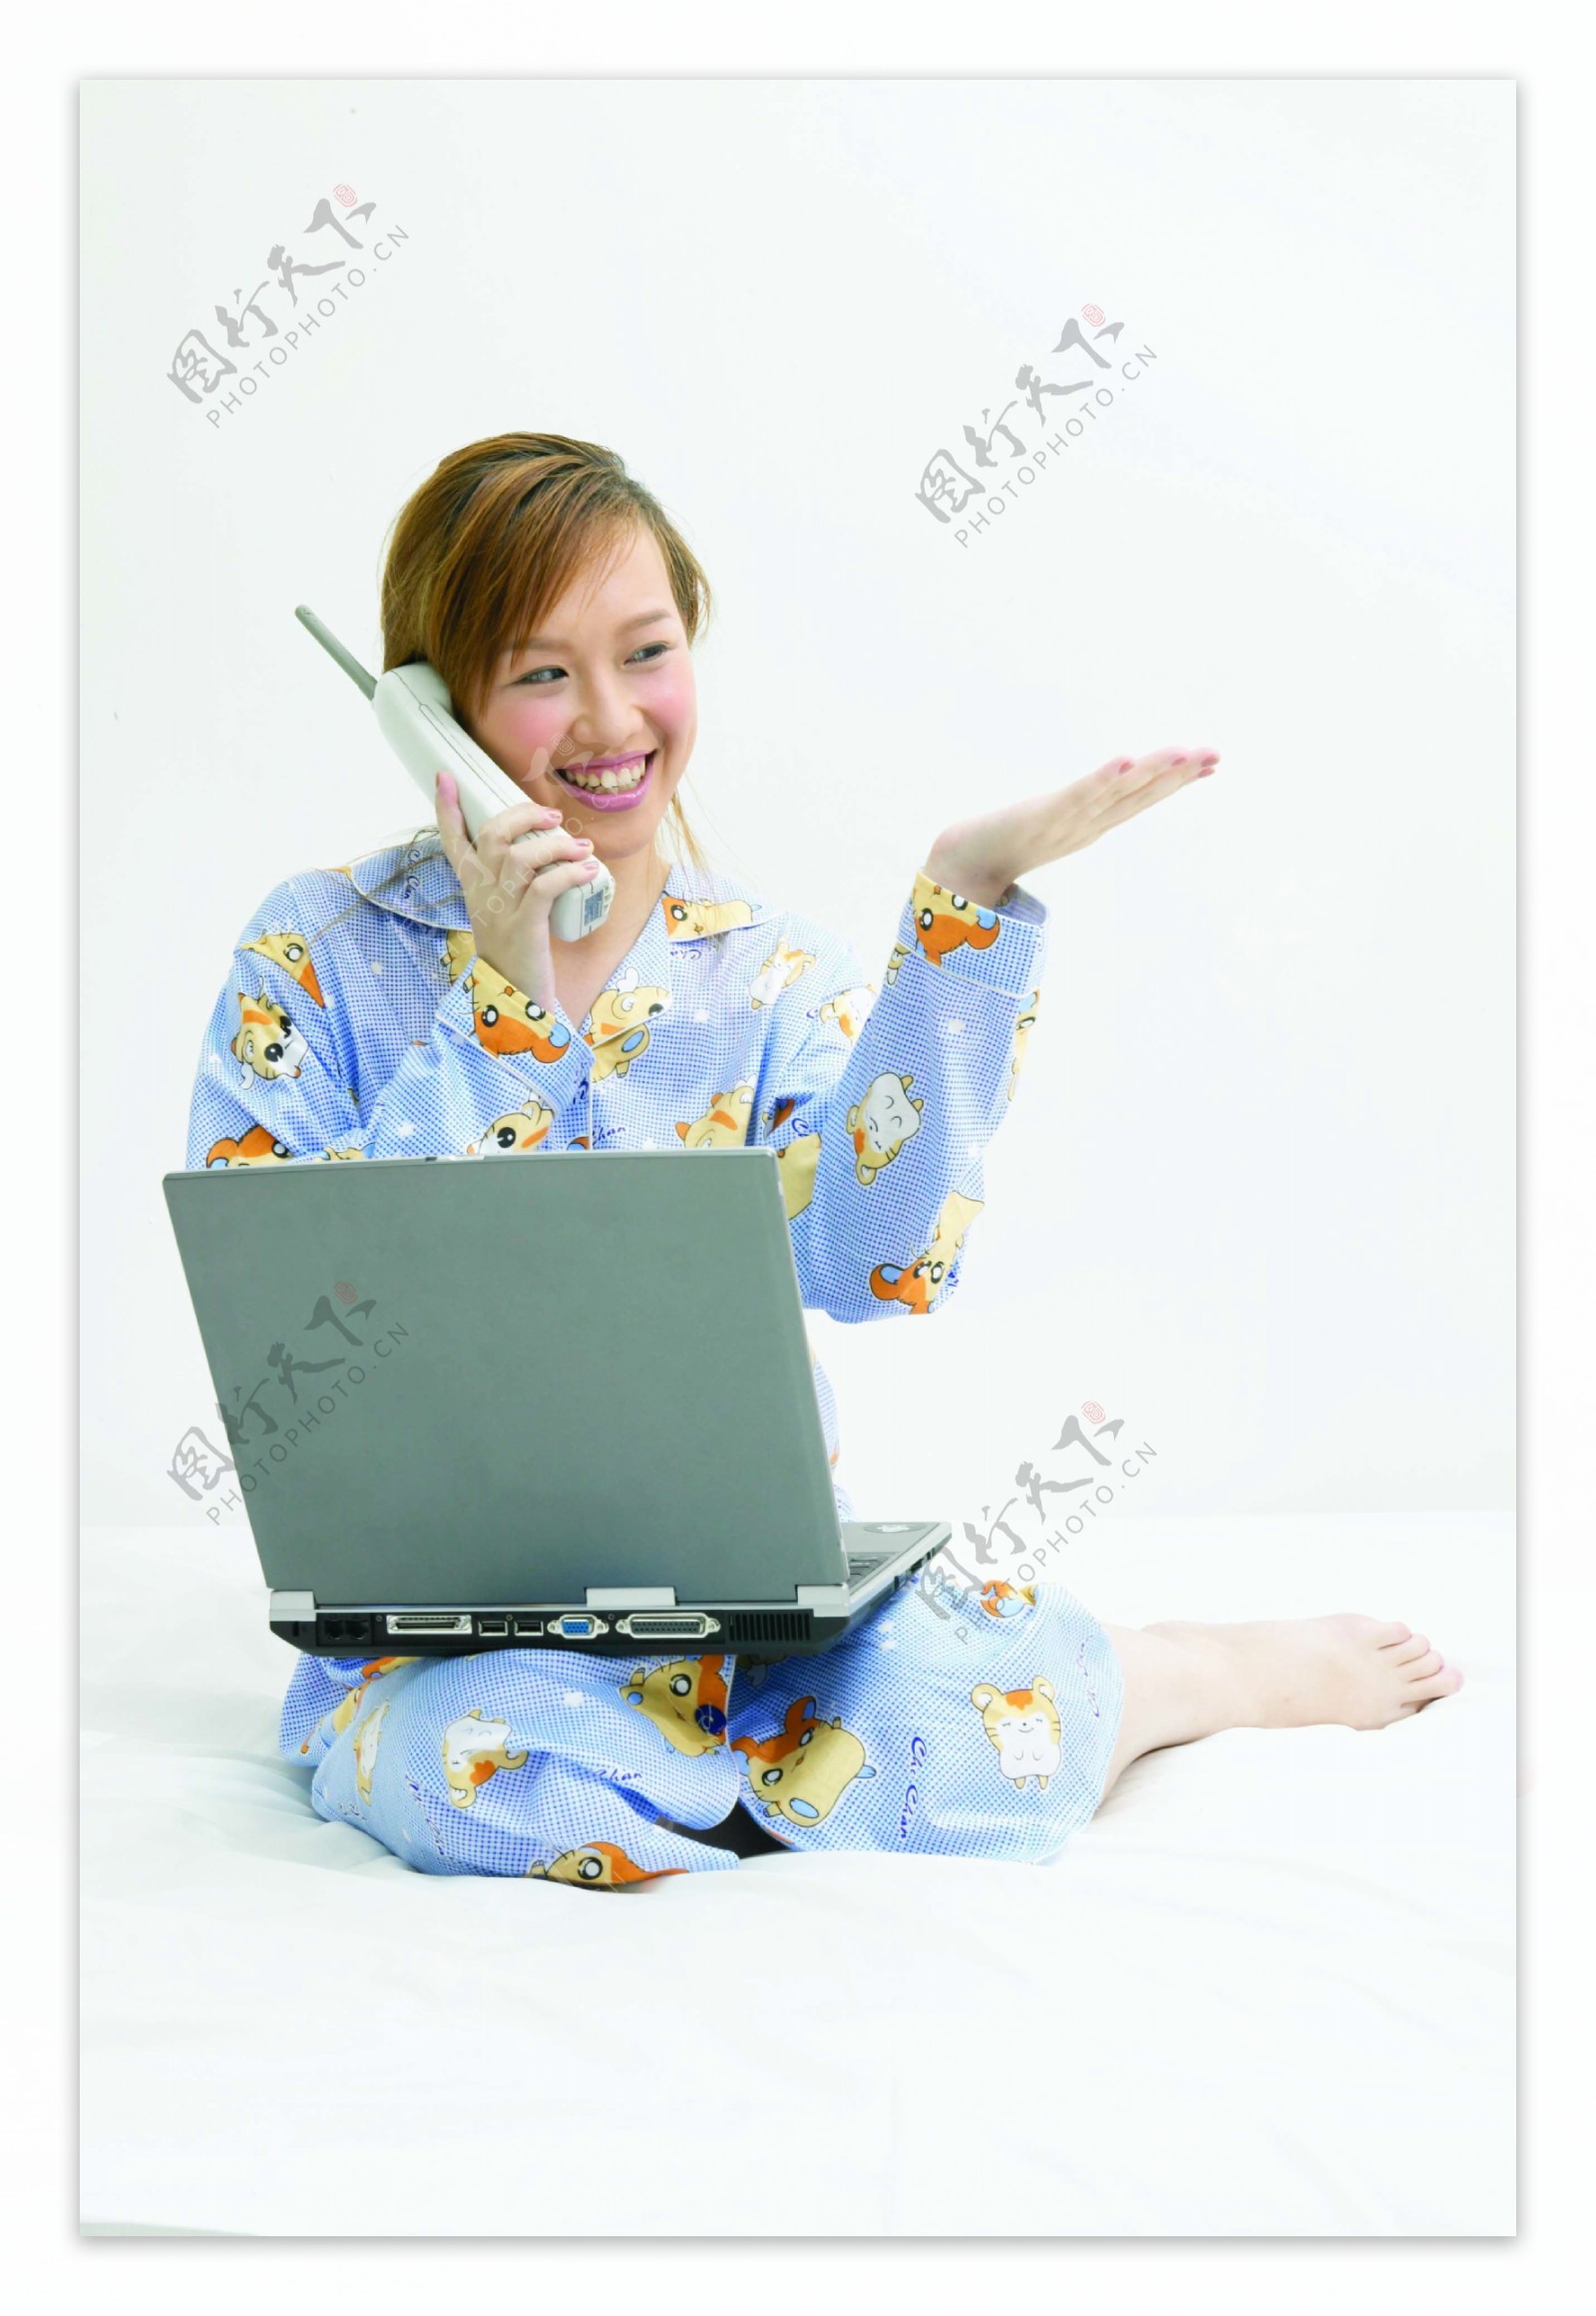 坐在床上打电话玩电脑的睡衣女人图片